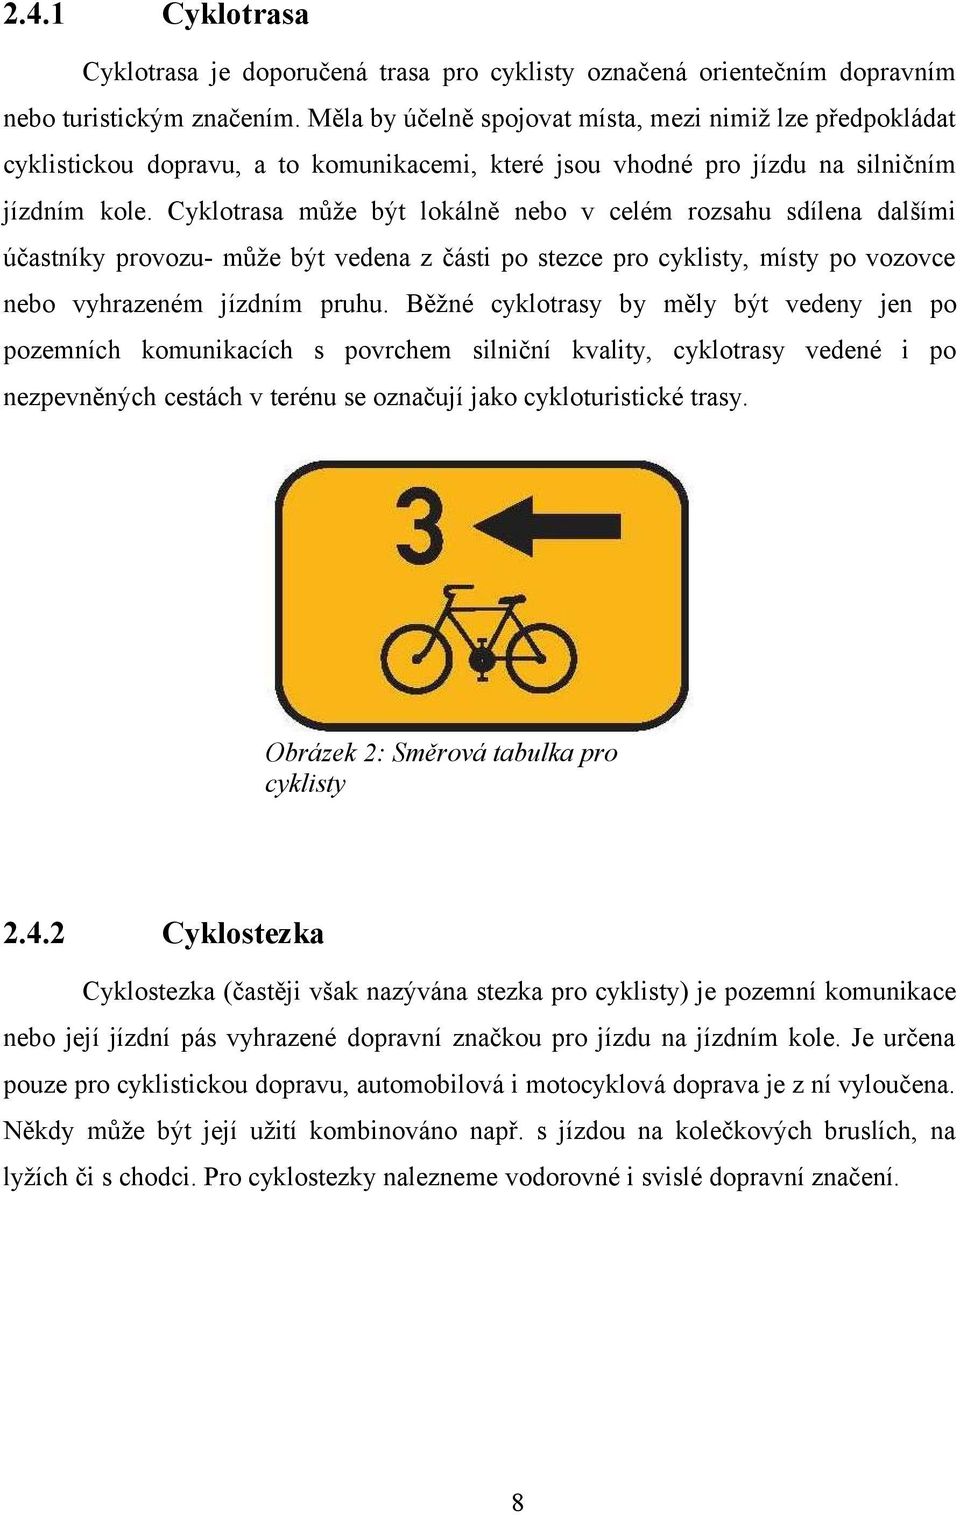 Cyklotrasa může být lokálně nebo v celém rozsahu sdílena dalšími účastníky provozu- může být vedena z části po stezce pro cyklisty, místy po vozovce nebo vyhrazeném jízdním pruhu.